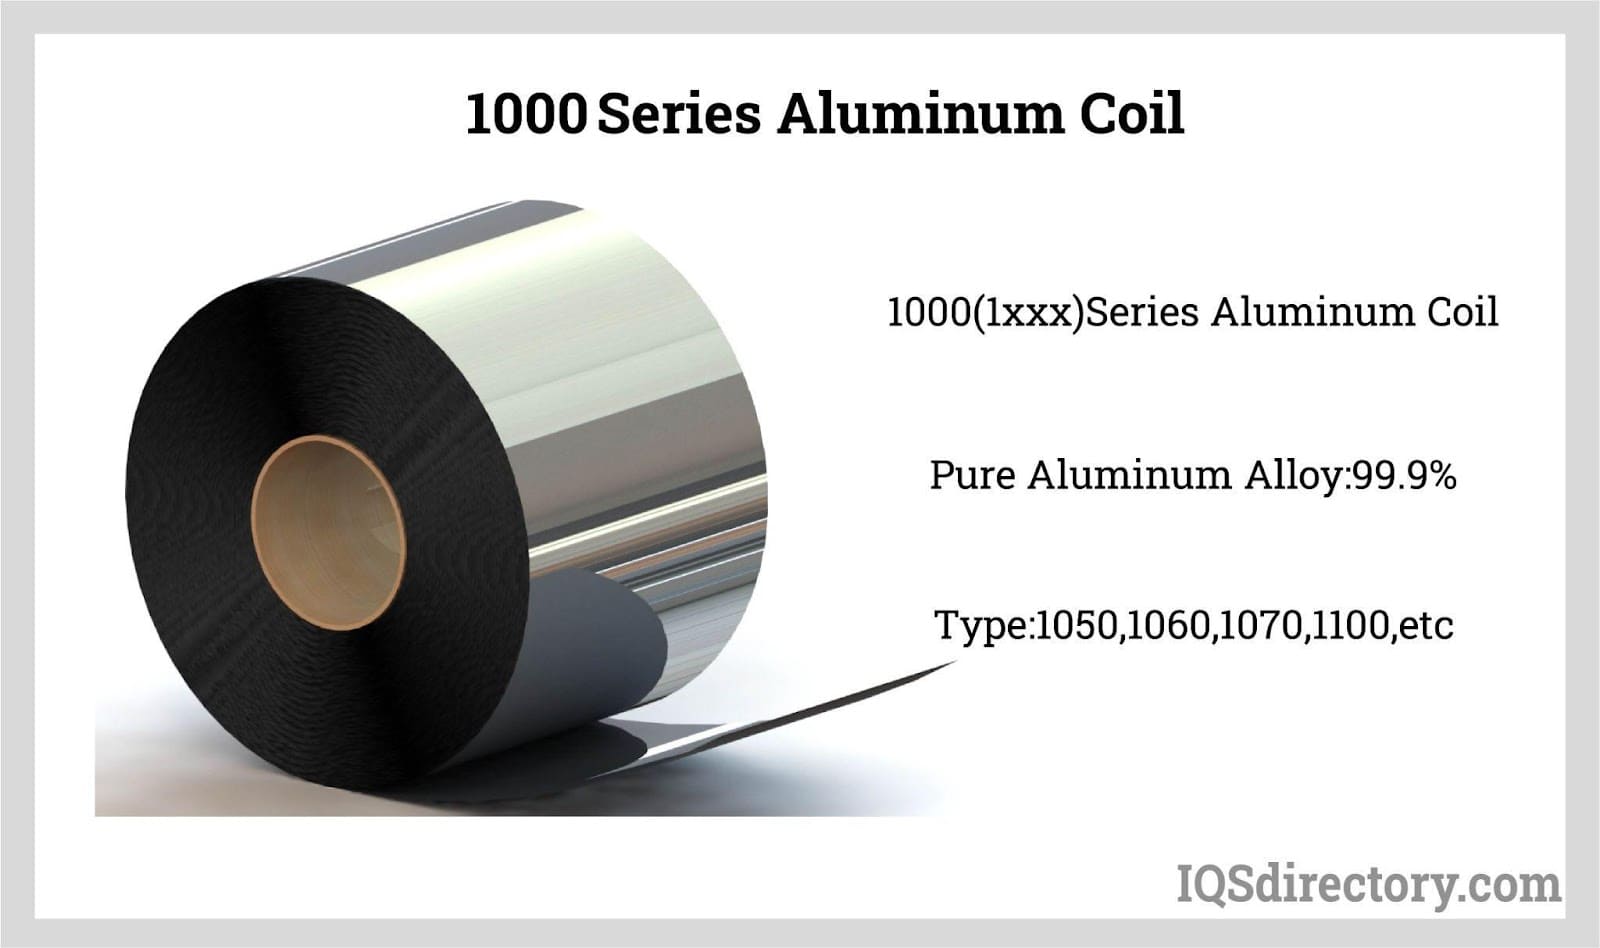 1000 Series Aluminum Coil